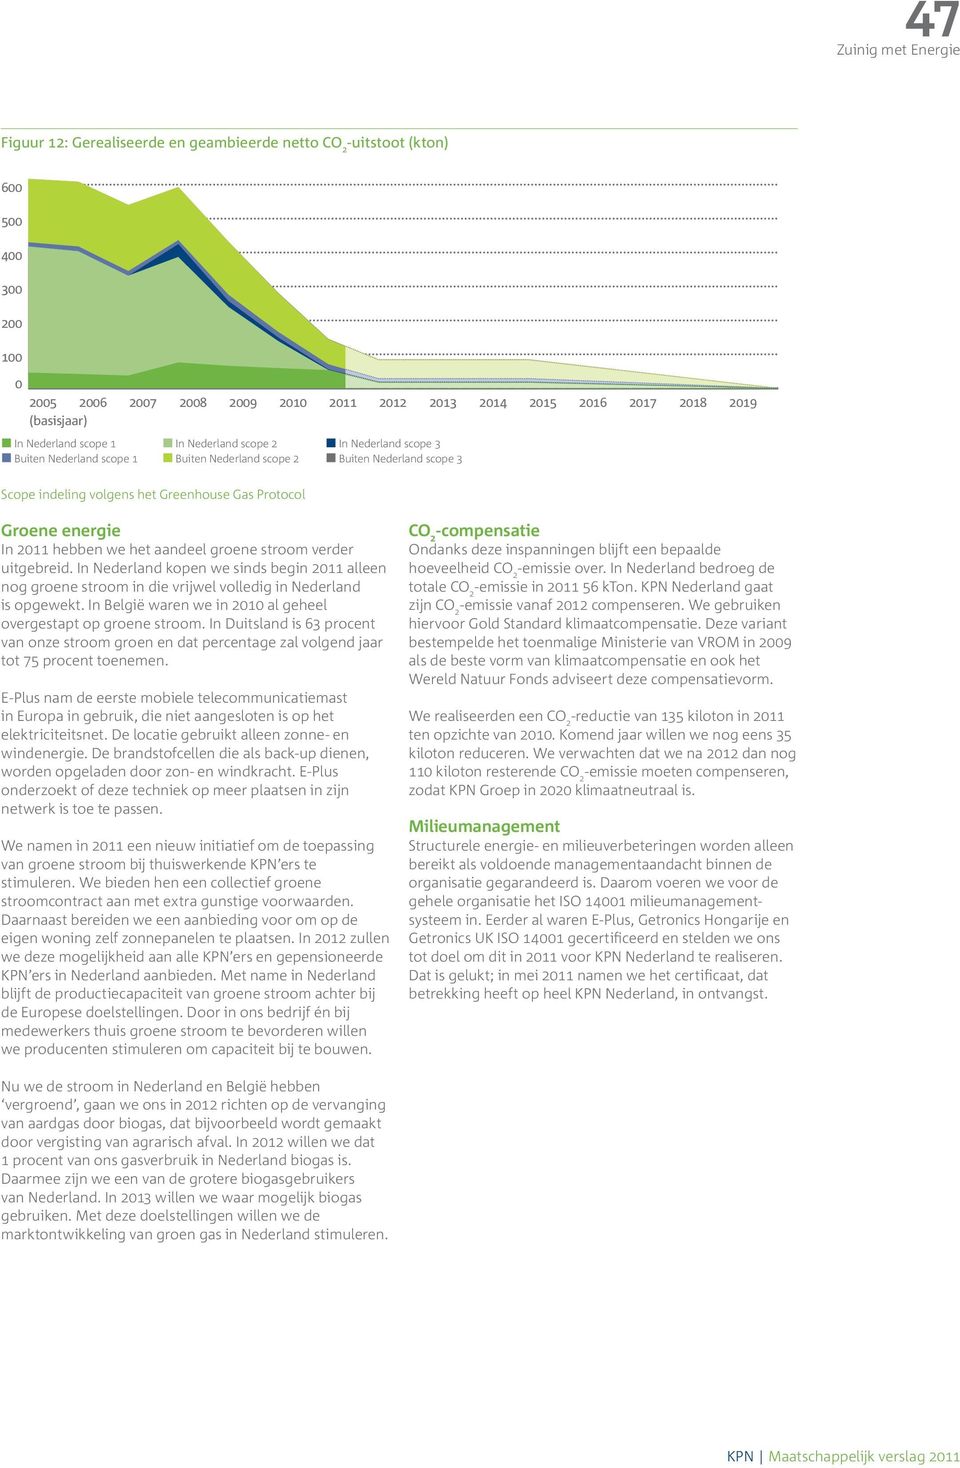 we het aandeel groene stroom verder uitgebreid. In Nederland kopen we sinds begin 2011 alleen nog groene stroom in die vrijwel volledig in Nederland is opgewekt.